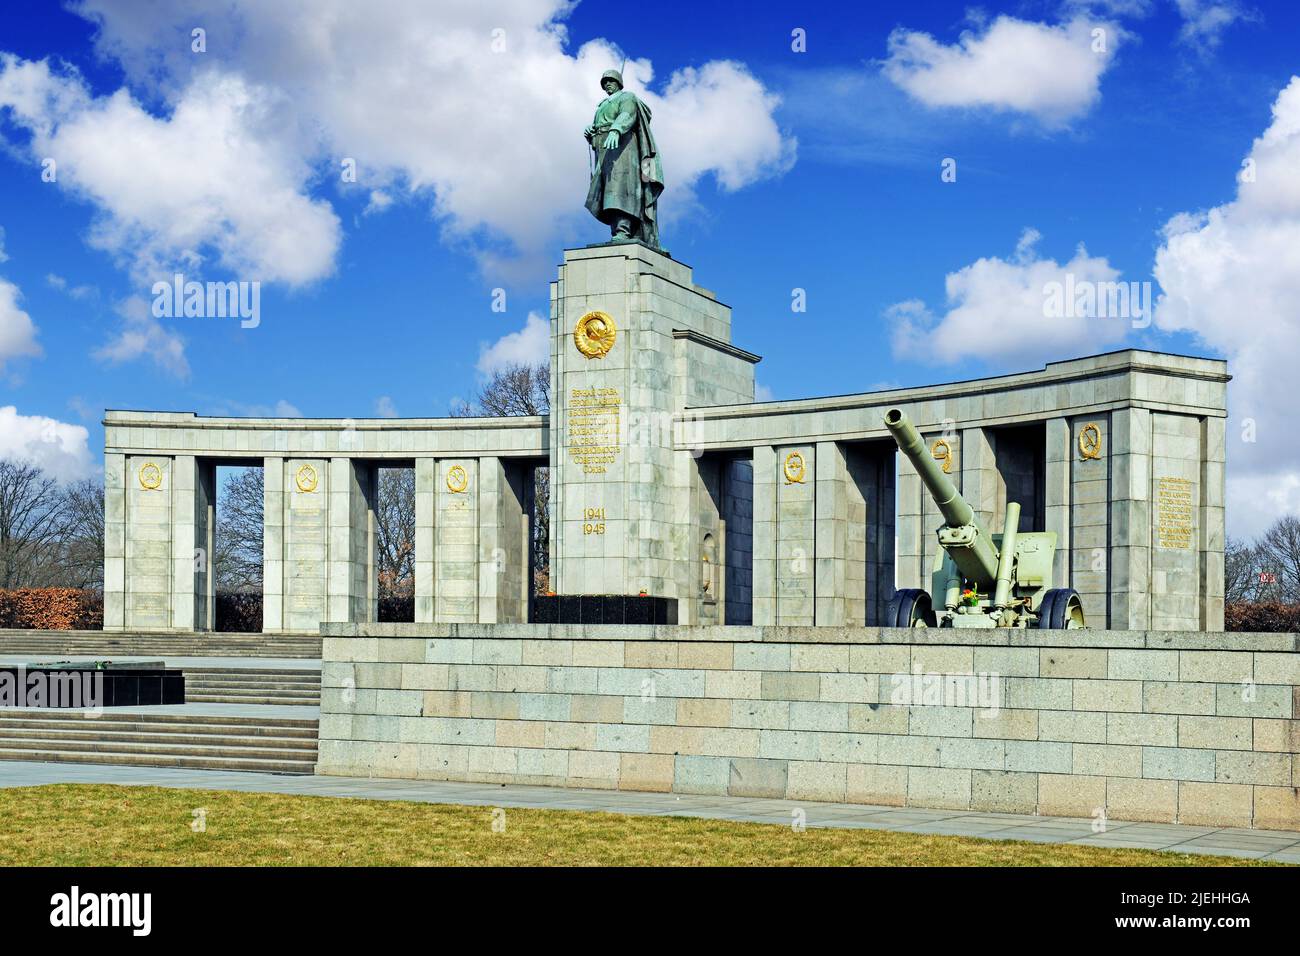 Sowjetische Ehrenmal für die gefallenen russischen, sowjetischen Soldaten des 2. Welkrieges, Strasse des 17. Juni, Berlin, Deutschland, Europa Stock Photo